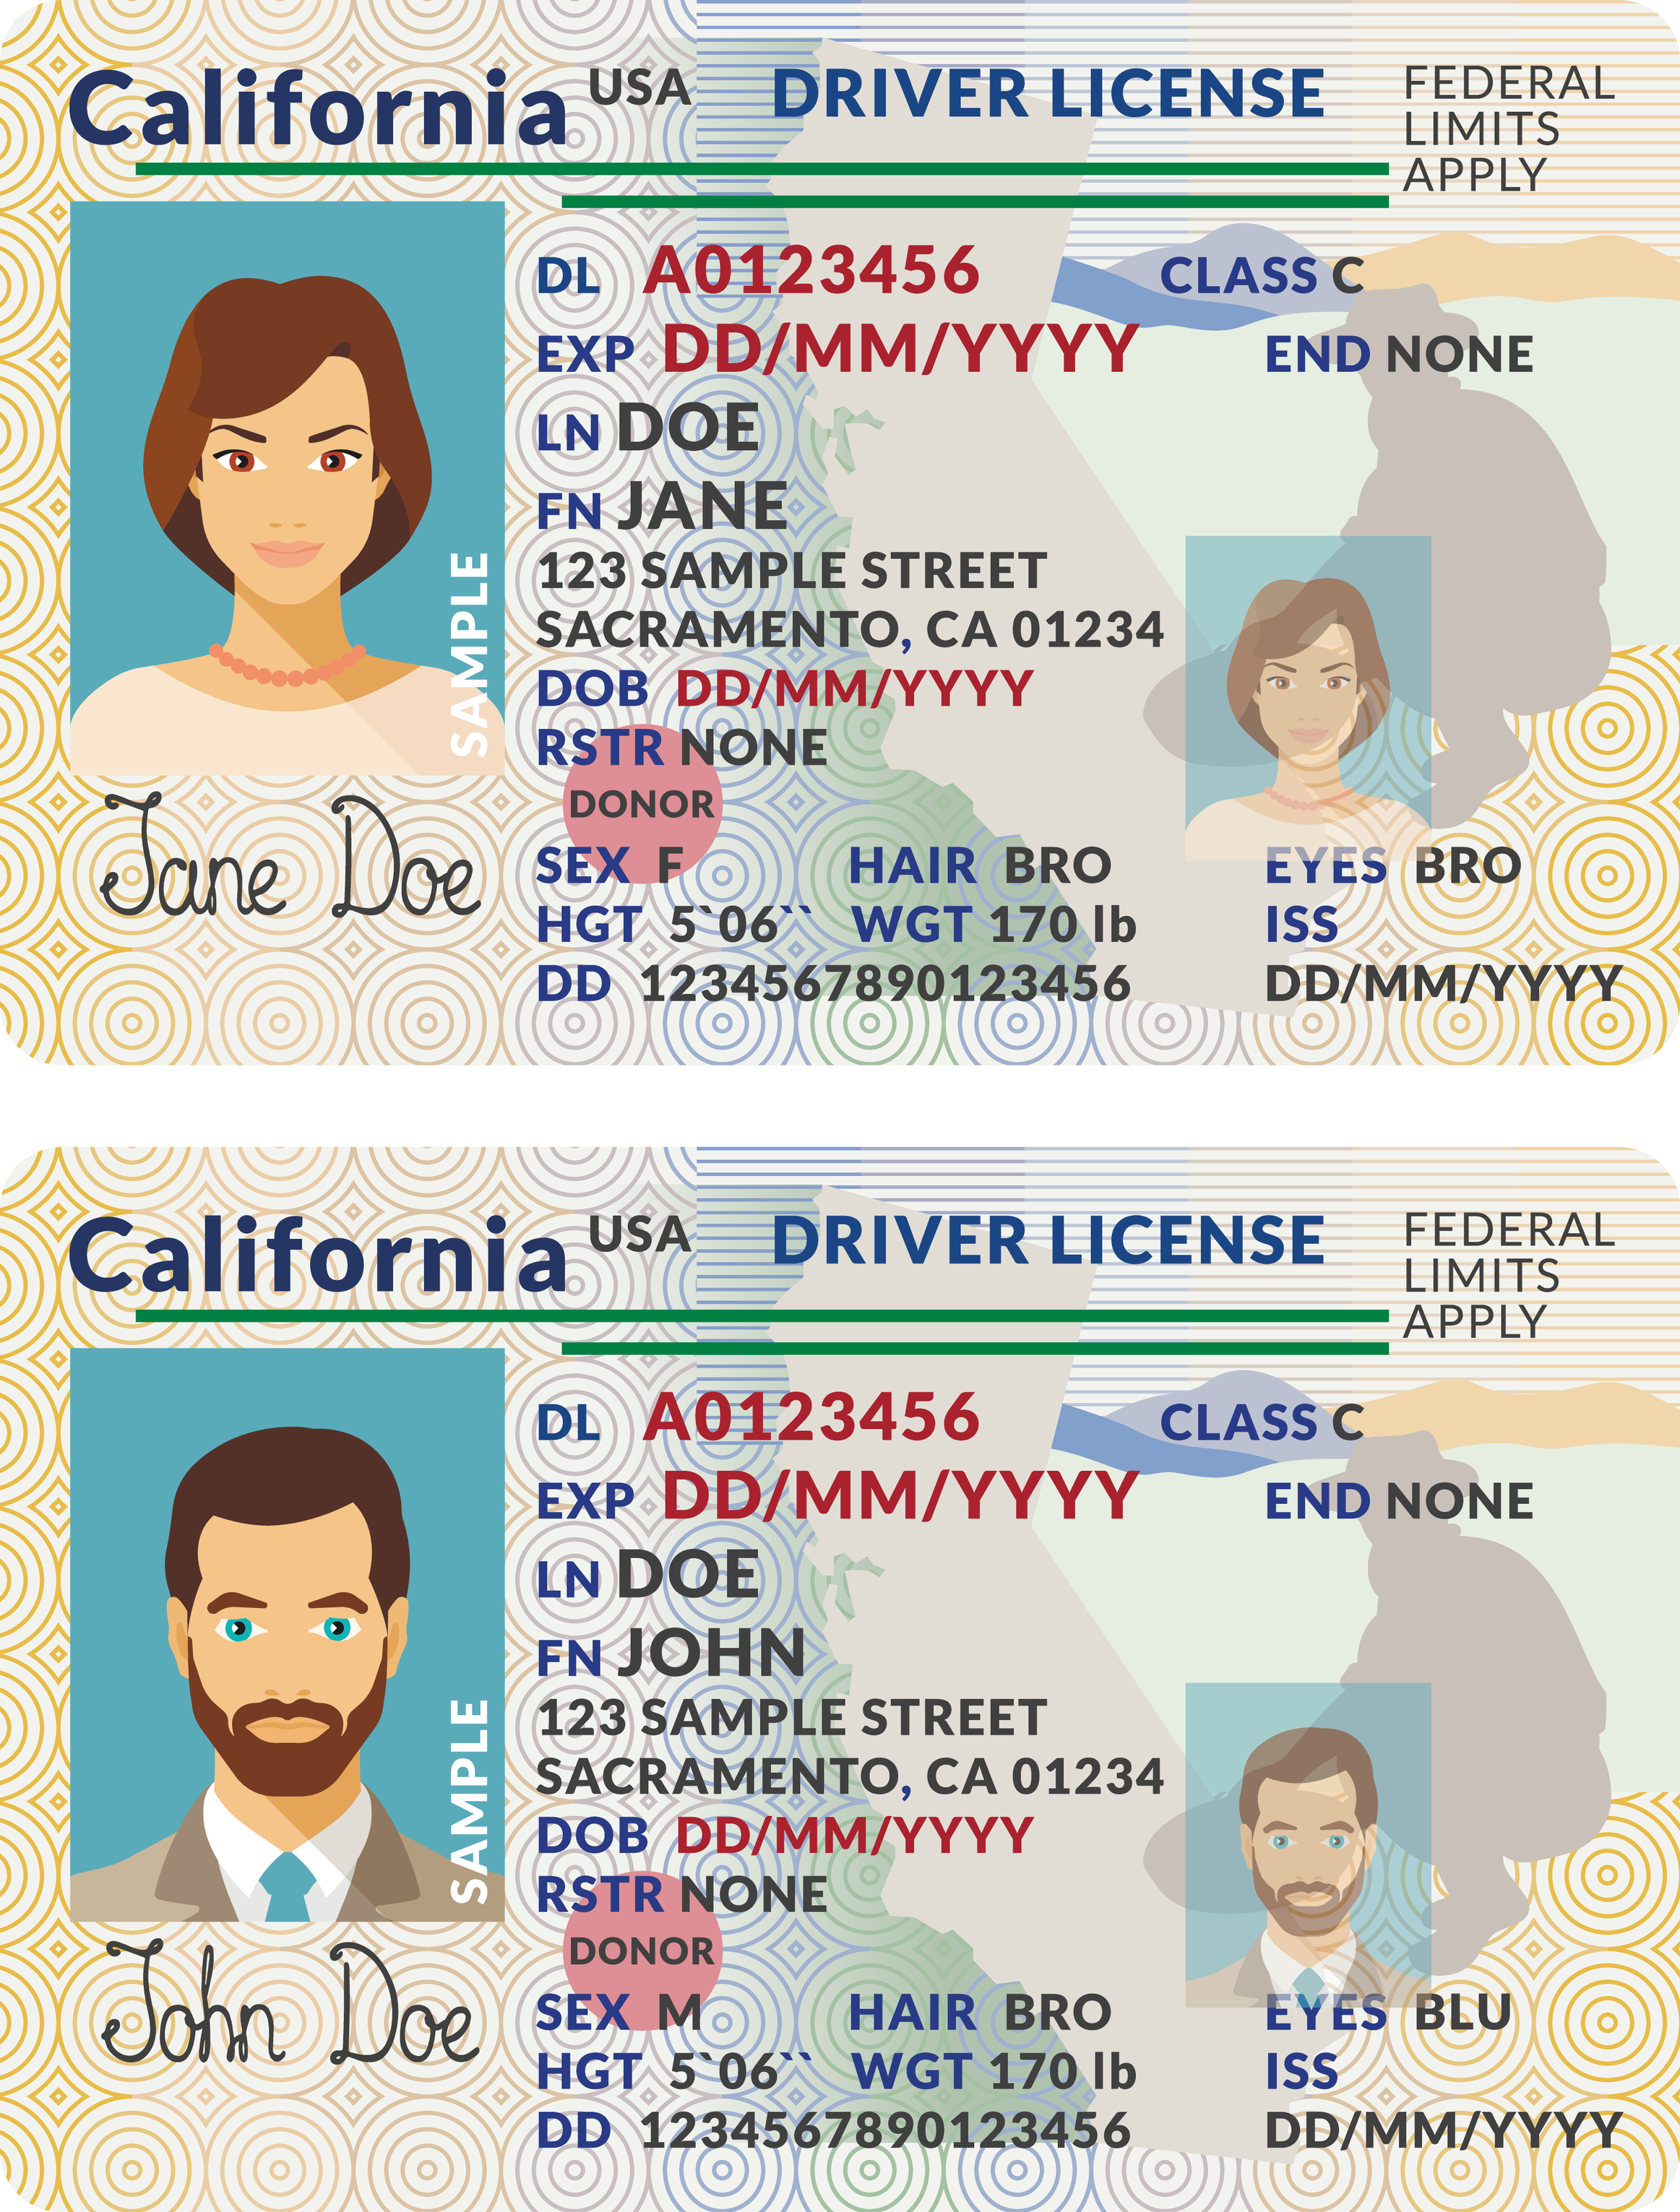 Imagen digital de licencias de conducir del estado de California